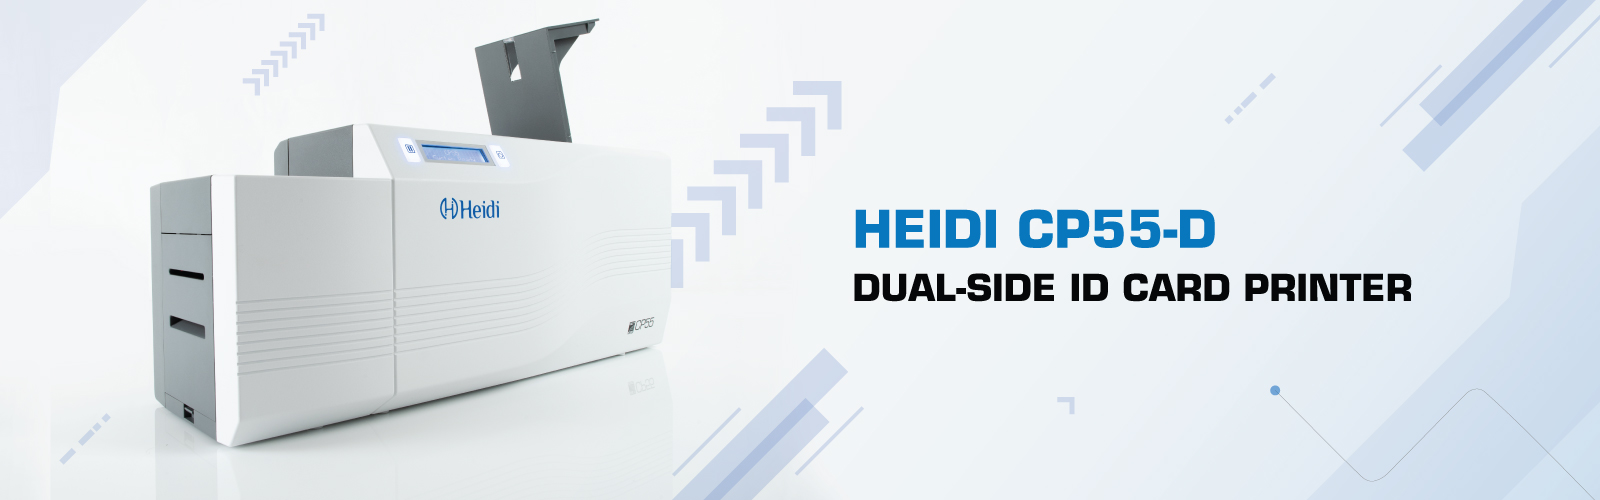 heidi-card-printers-cp55-d-banner-1600